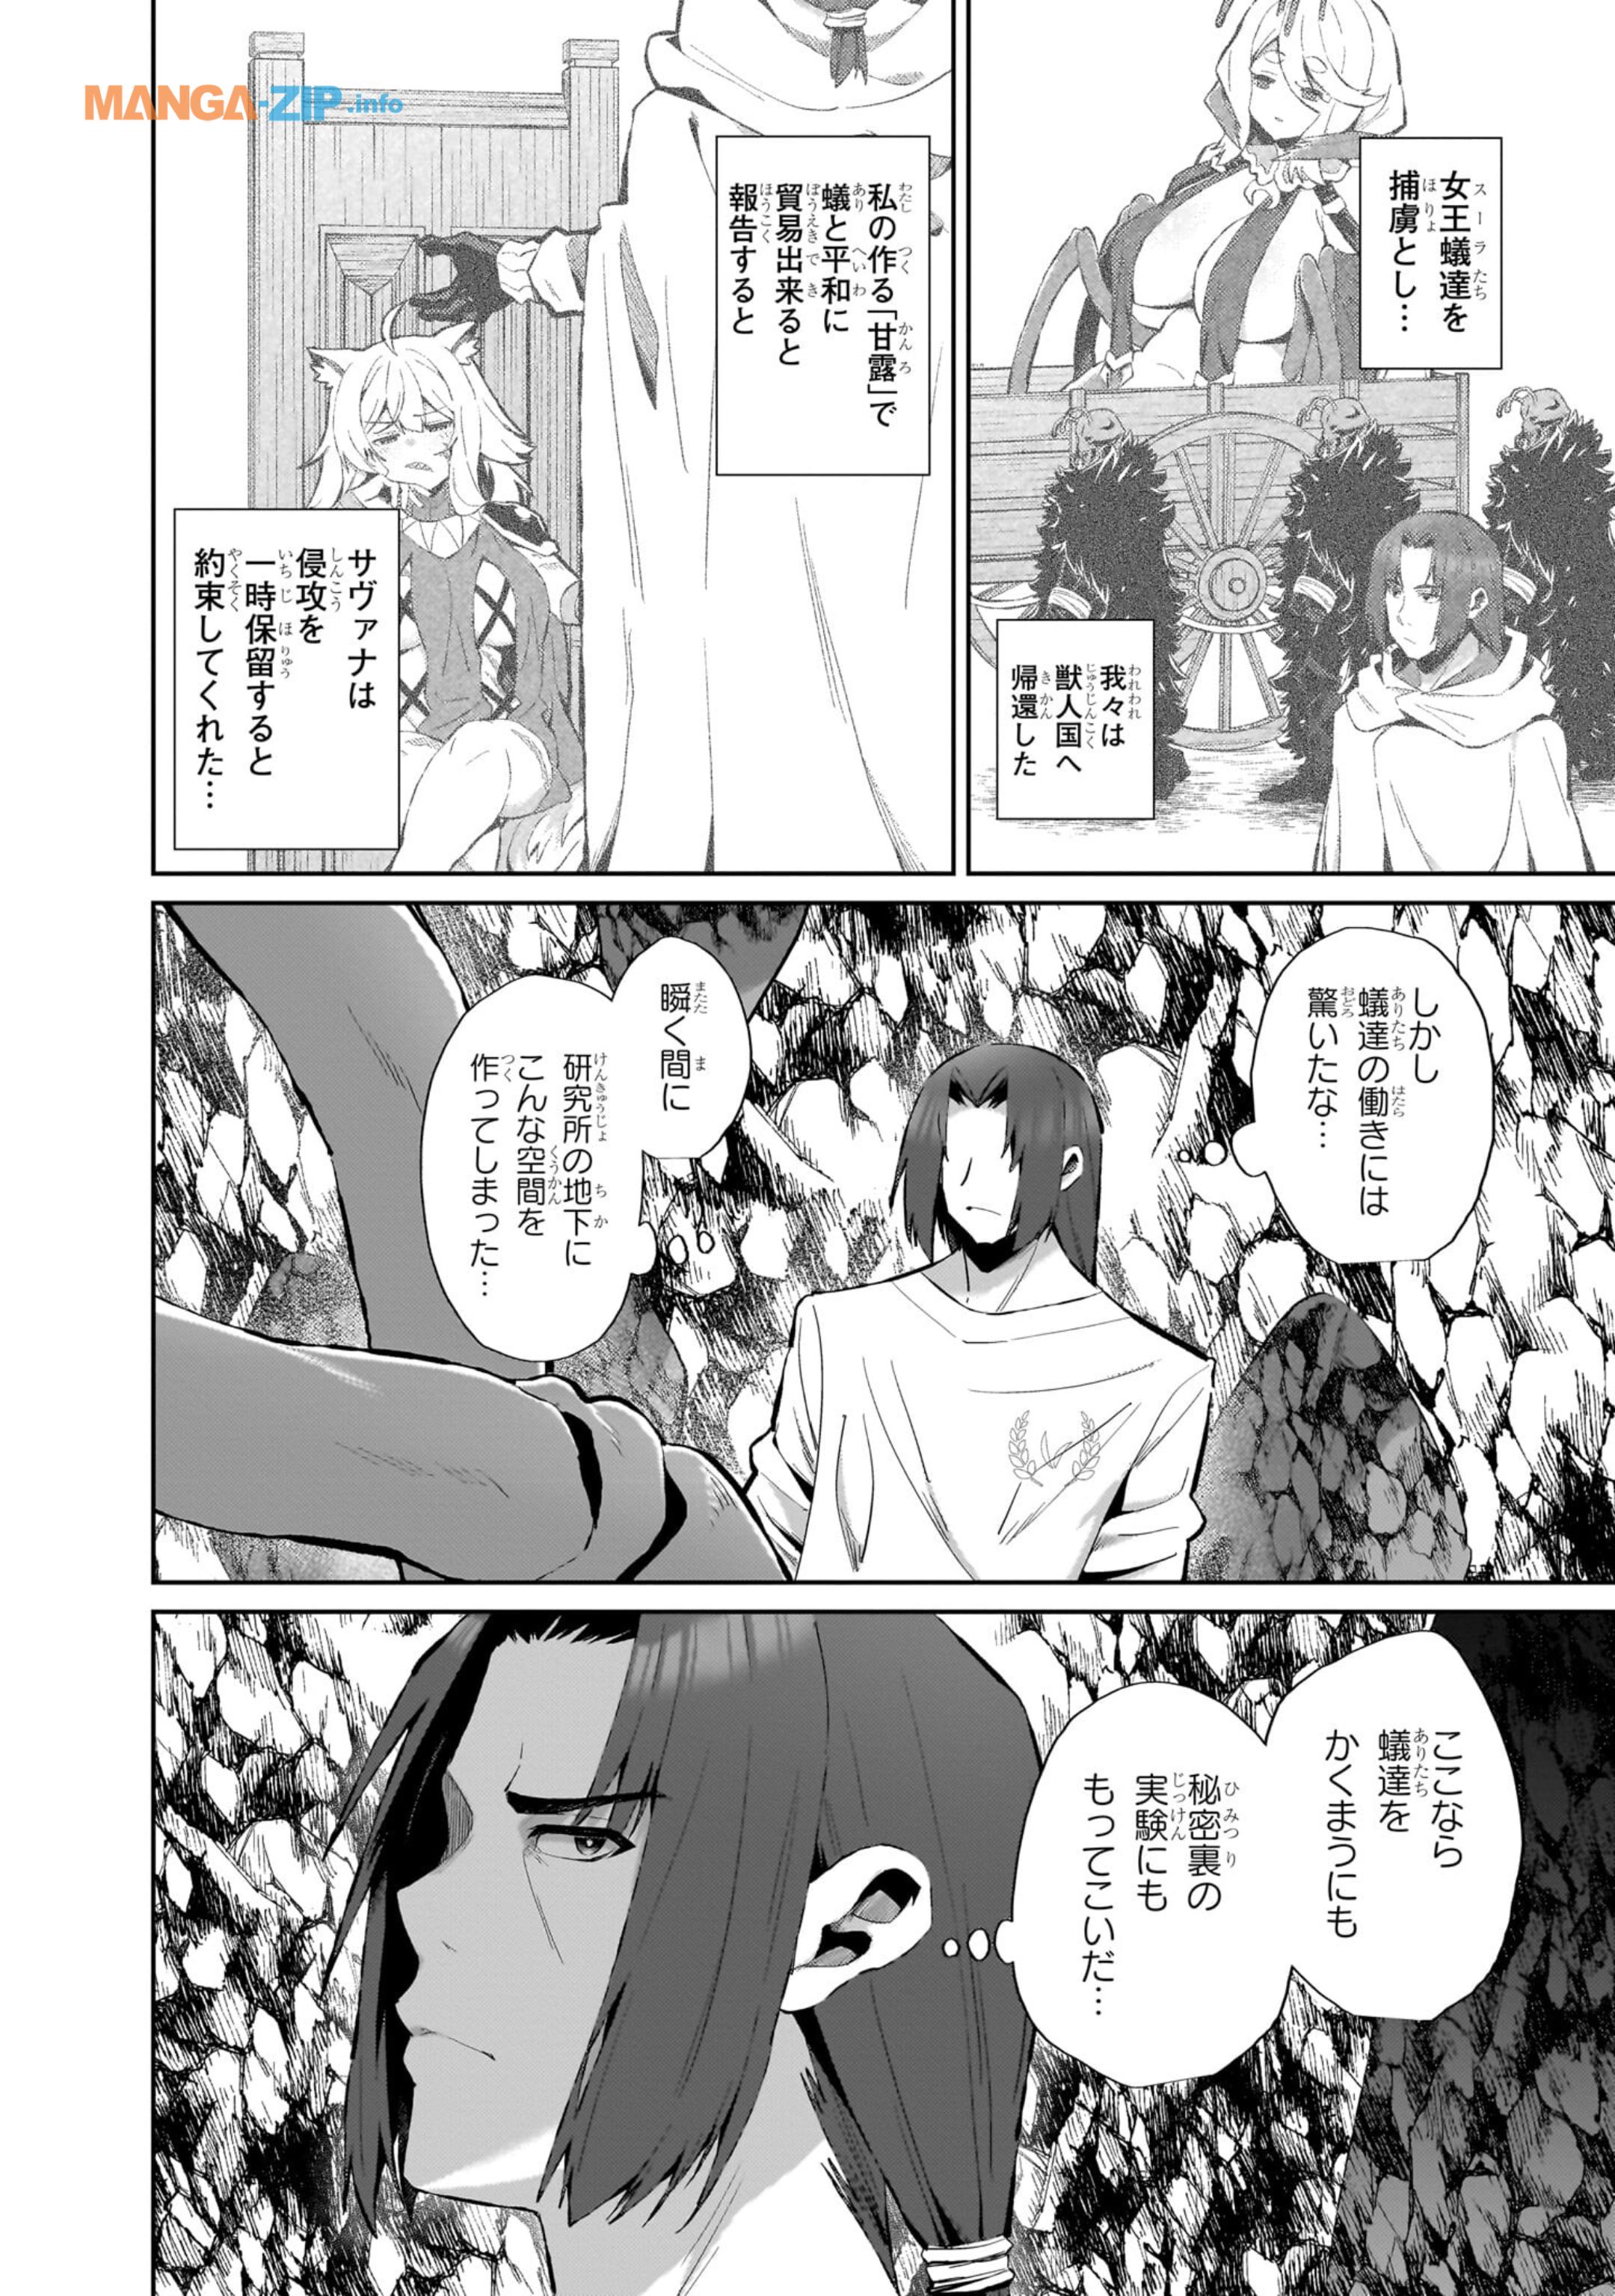 Nogaku Hakase no Isekai Muso Kinki no Chishiki de Kizuku Monster Musume Harem - Chapter 6 - Page 2